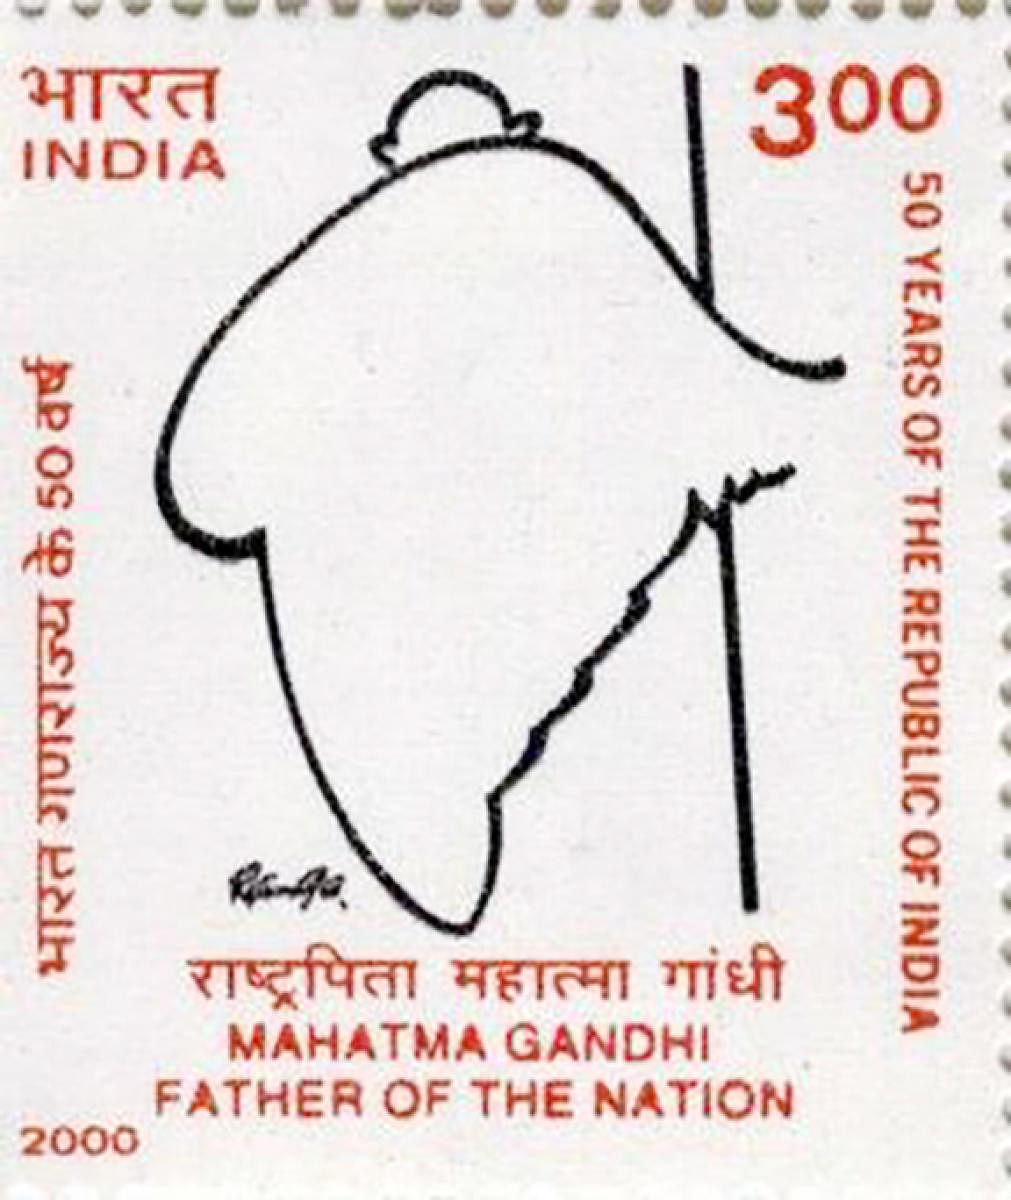 ವ್ಯಂಗ್ಯಚಿತ್ರಕಾರ ರಂಗಾ ಅವರು ಬರೆದಿದ್ದ ಗಾಂಧಿ ಚಿತ್ರವನ್ನು ಭಾರತೀಯ ಅಂಚೆ ಇಲಾಖೆ ತನ್ನ ಅಂಚೆಚೀಟಿಯಲ್ಲಿ ಬಳಸಿಕೊಂಡಿದೆ